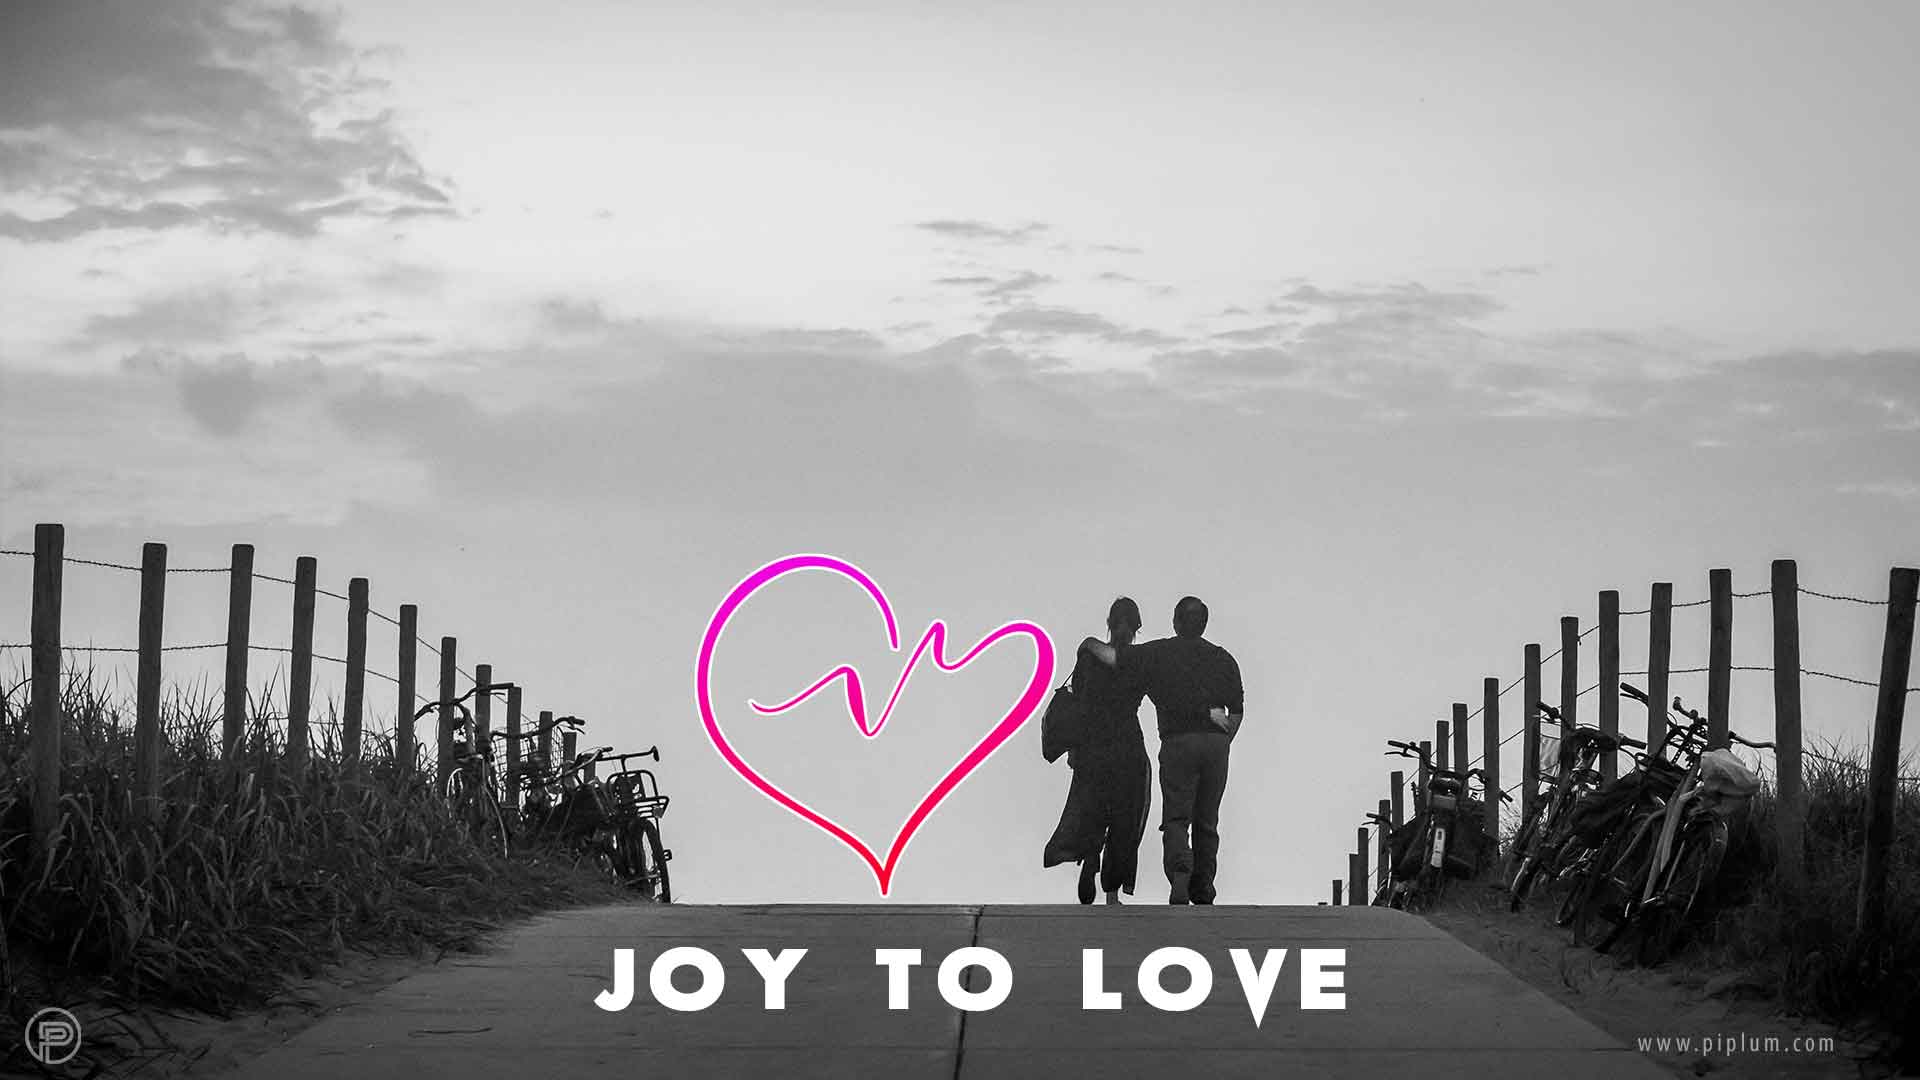 joy-to-true-love-quote